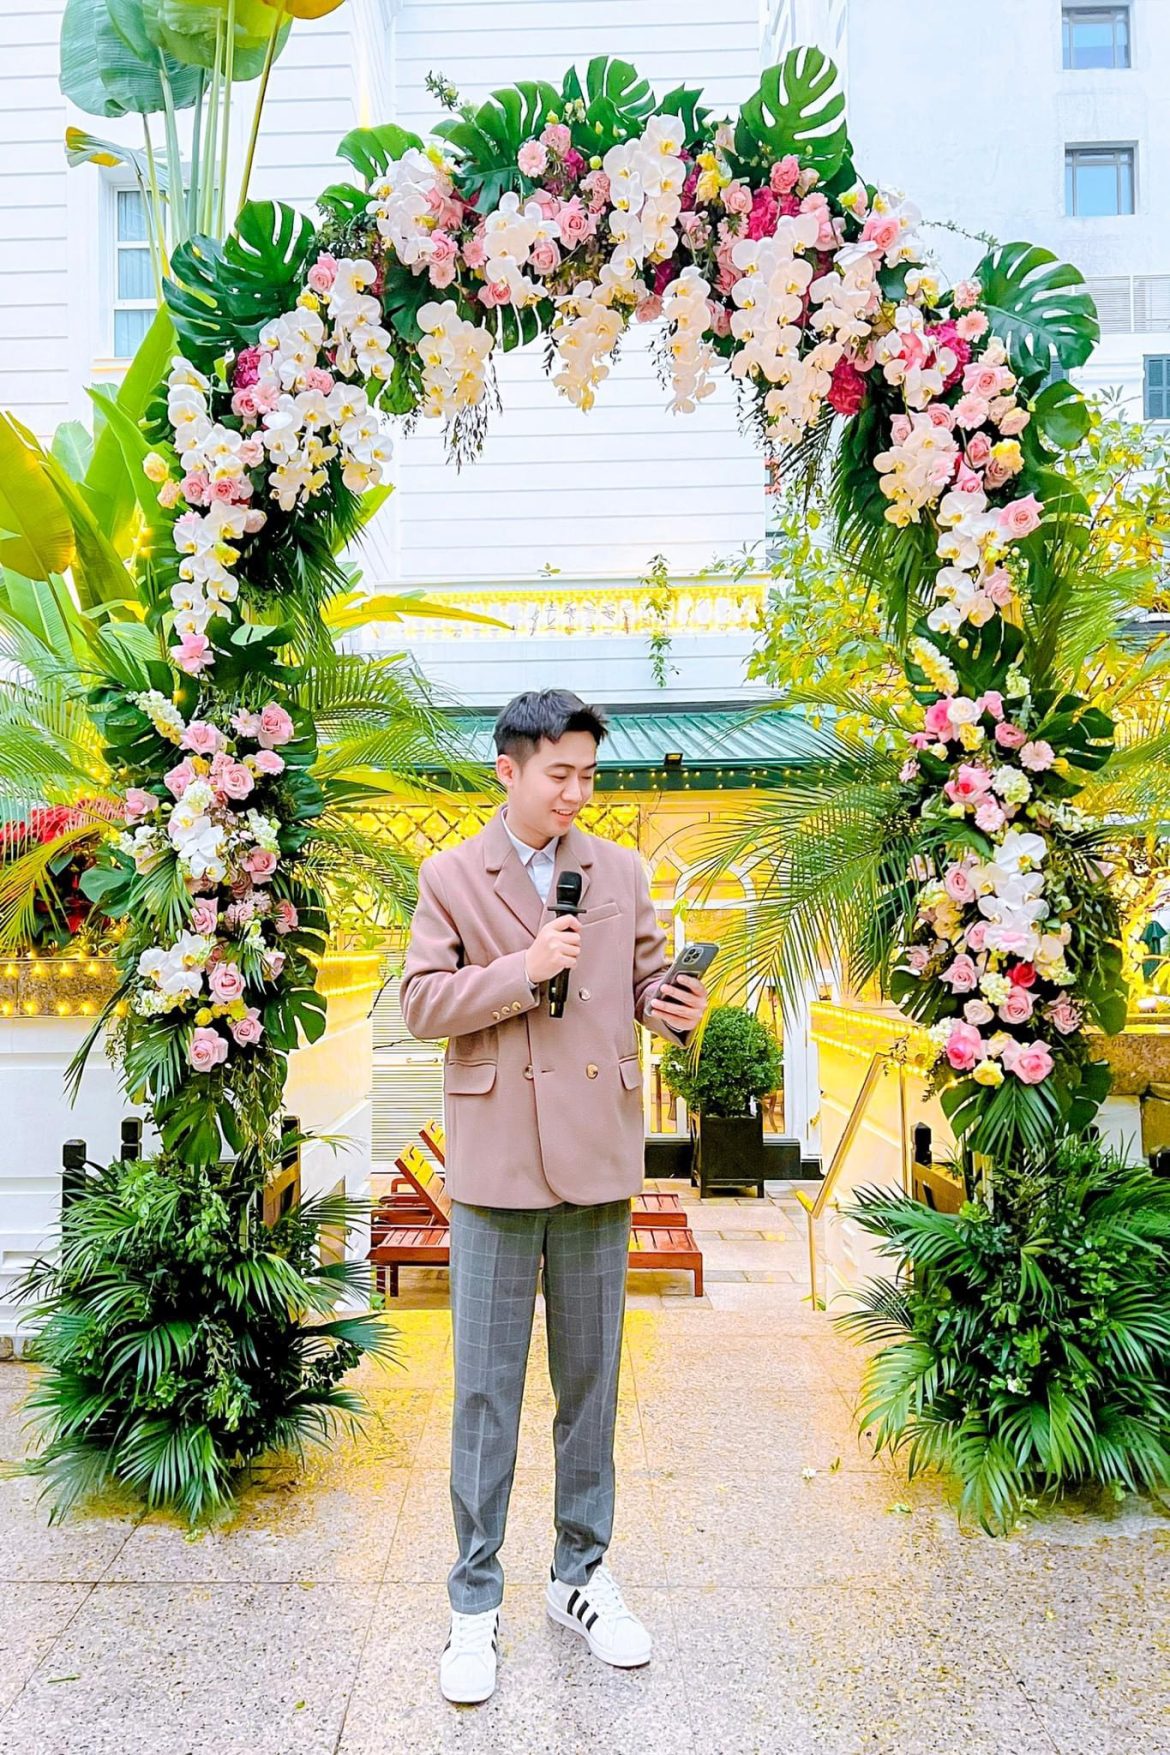 Phù thủy décor tiệc cưới Hà thành – Thành Đạt Planner: Từ những lễ cưới ngoài trời chất ngất cho đến những không gian tiệc cưới đẳng cấp